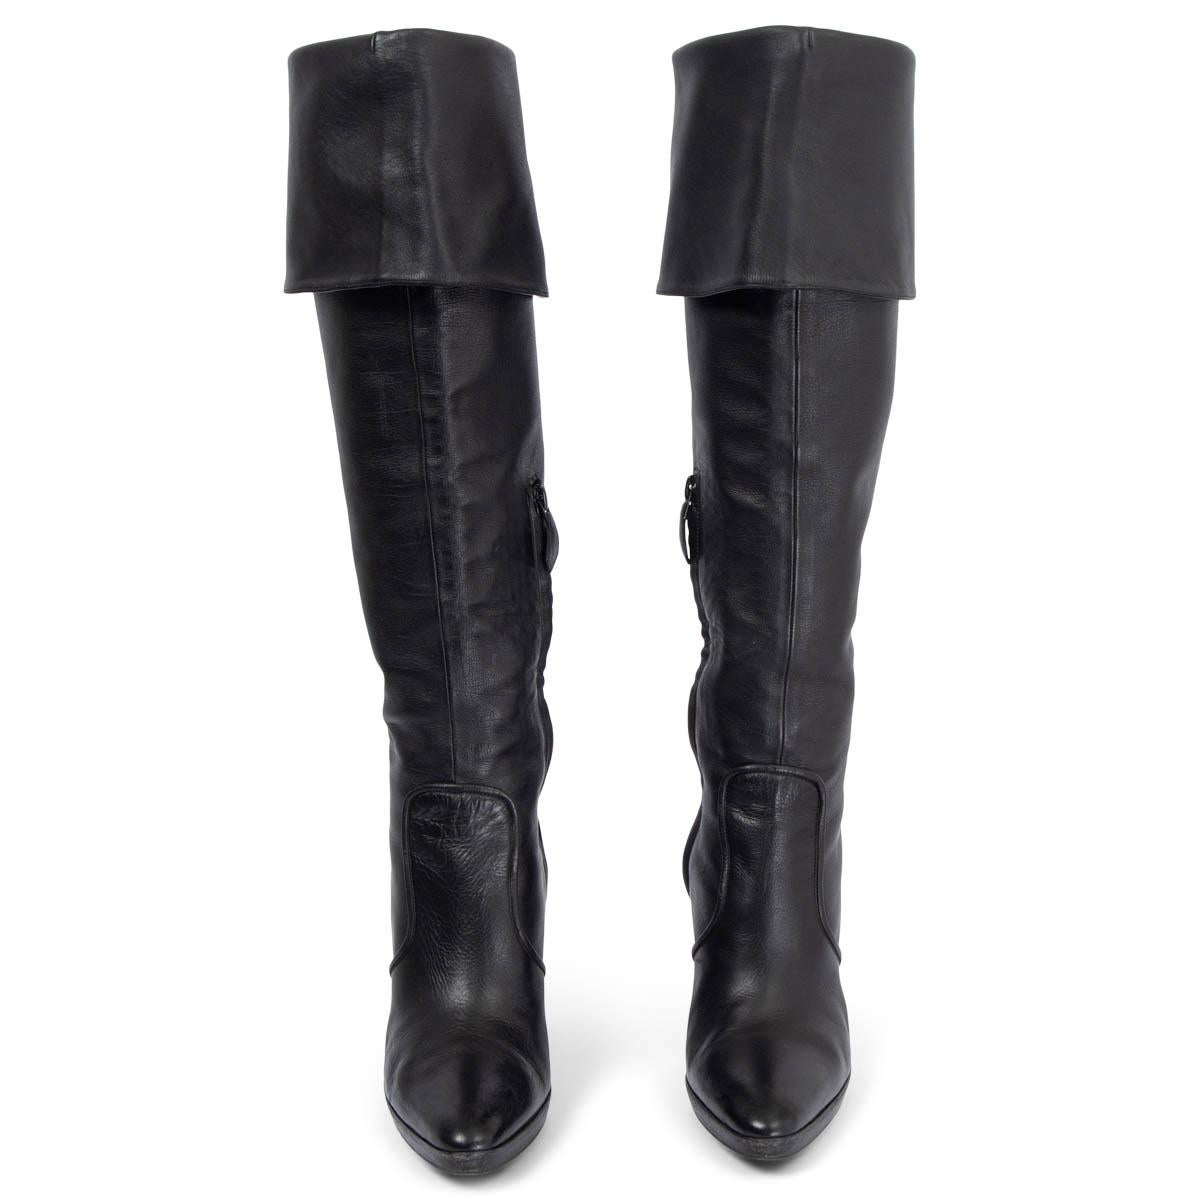 100% authentische kniehohe Hermès Kreuzritter-Stiefel aus glattem schwarzem Kalbsleder mit gestuftem Absatz und umklappbarem Schaft. Zu öffnen mit einem Innen-Reißverschluss. Sie wurden getragen und sind in ausgezeichnetem Zustand. Lieferung mit